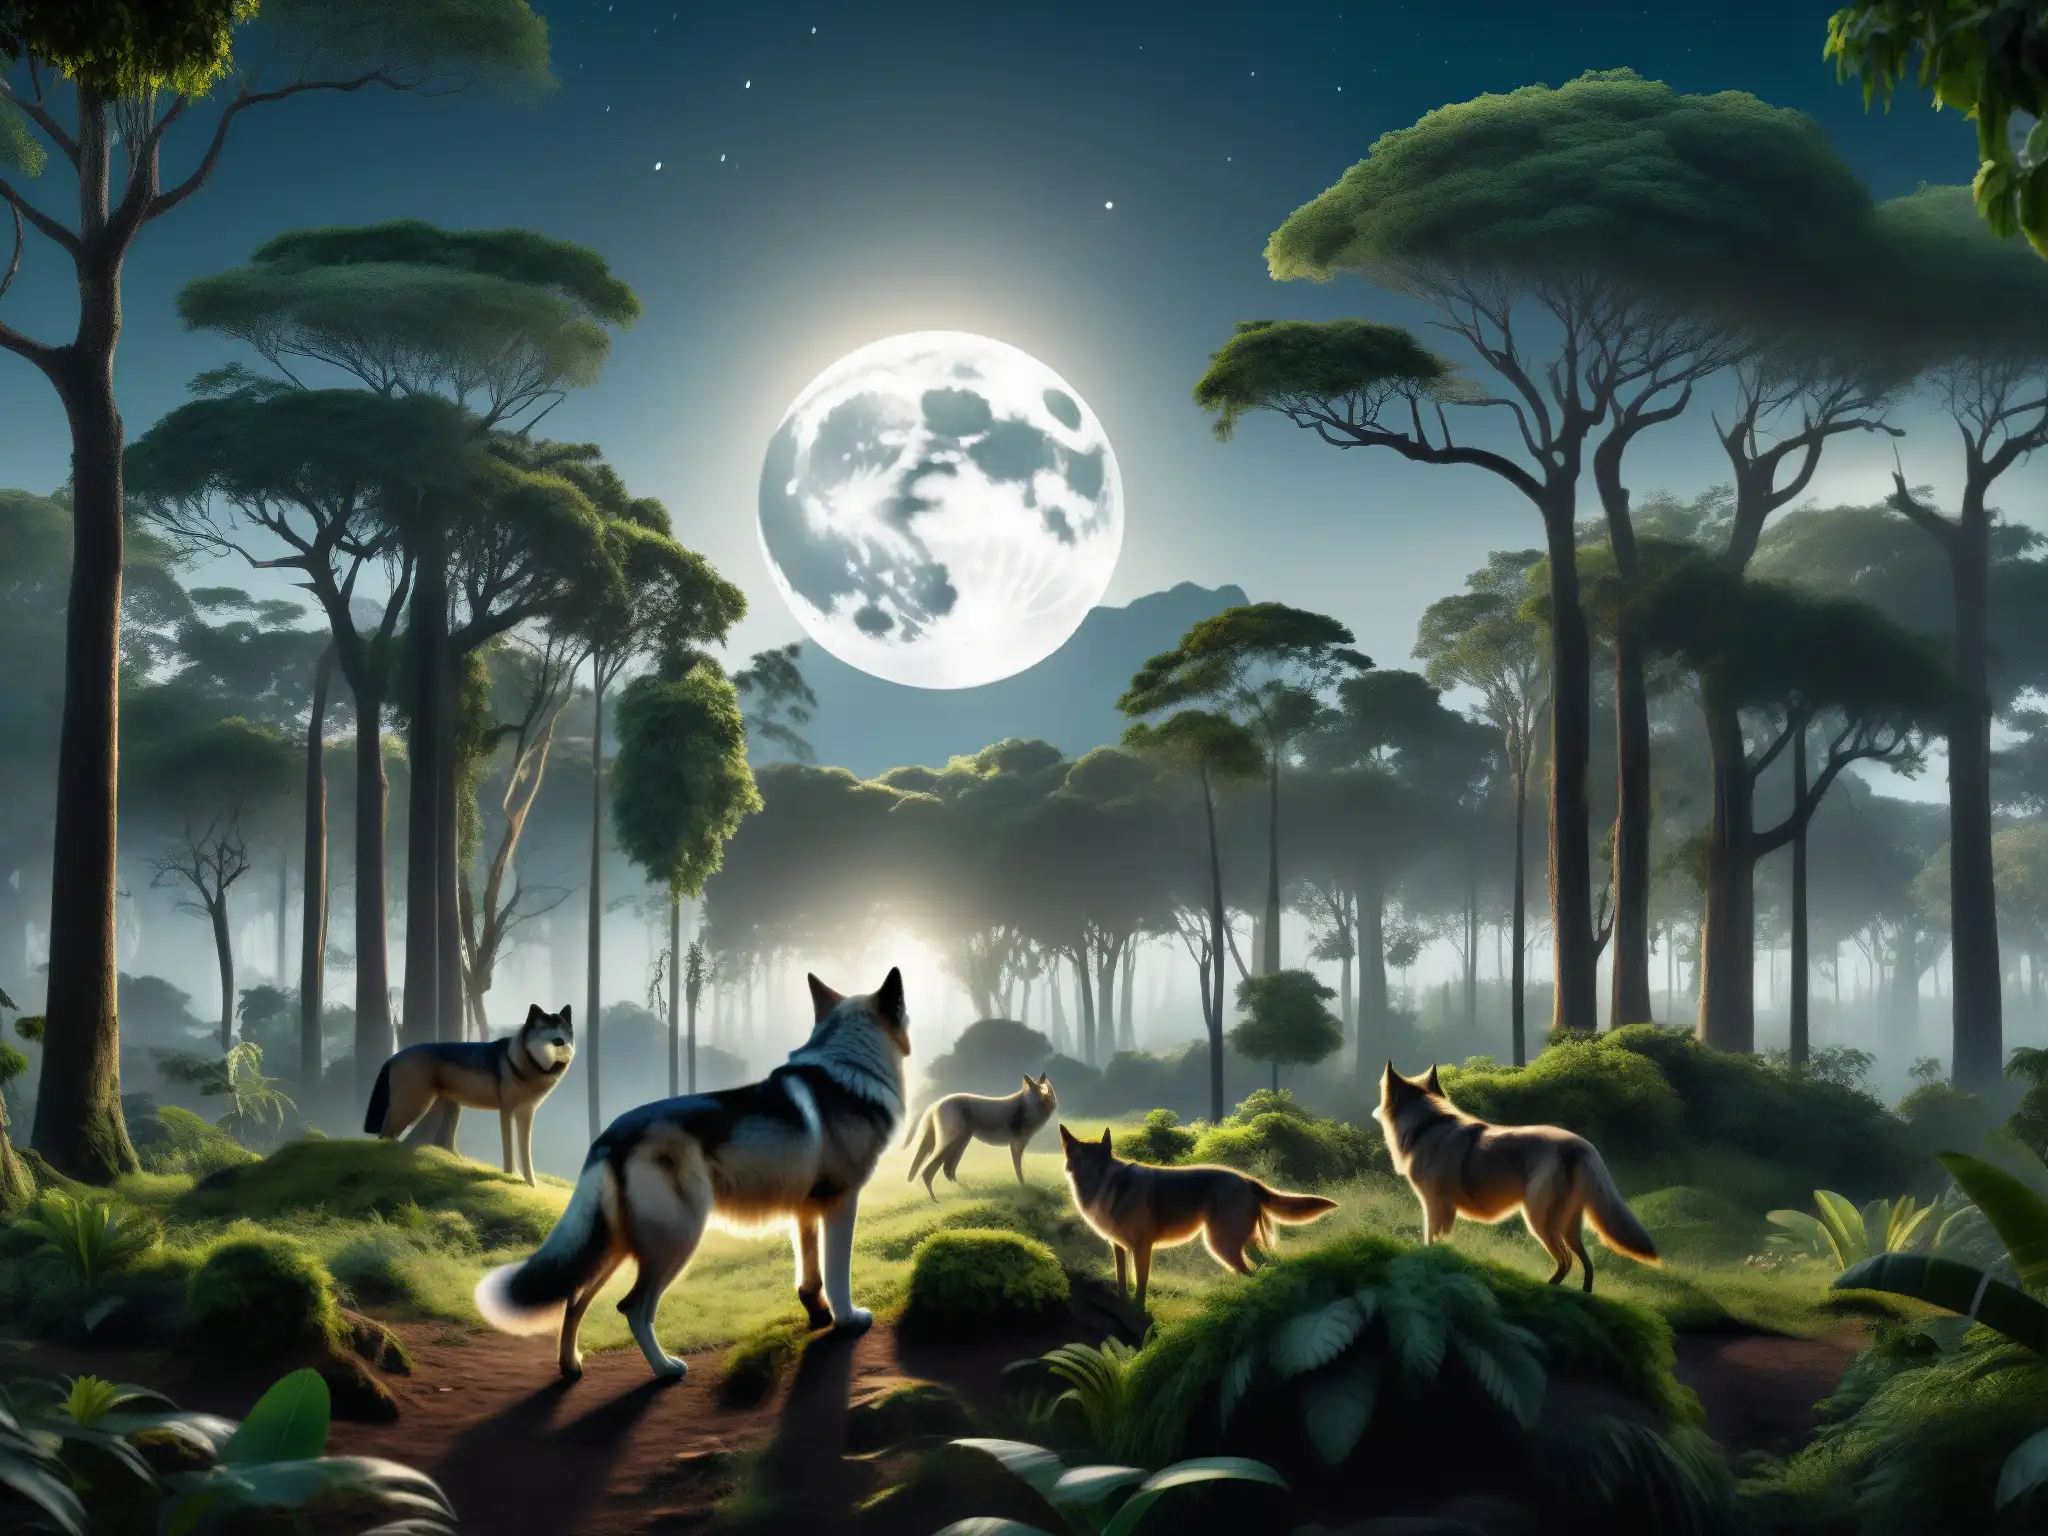 Imagen detallada en 8k de un bosque iluminado por la luna en Sudamérica